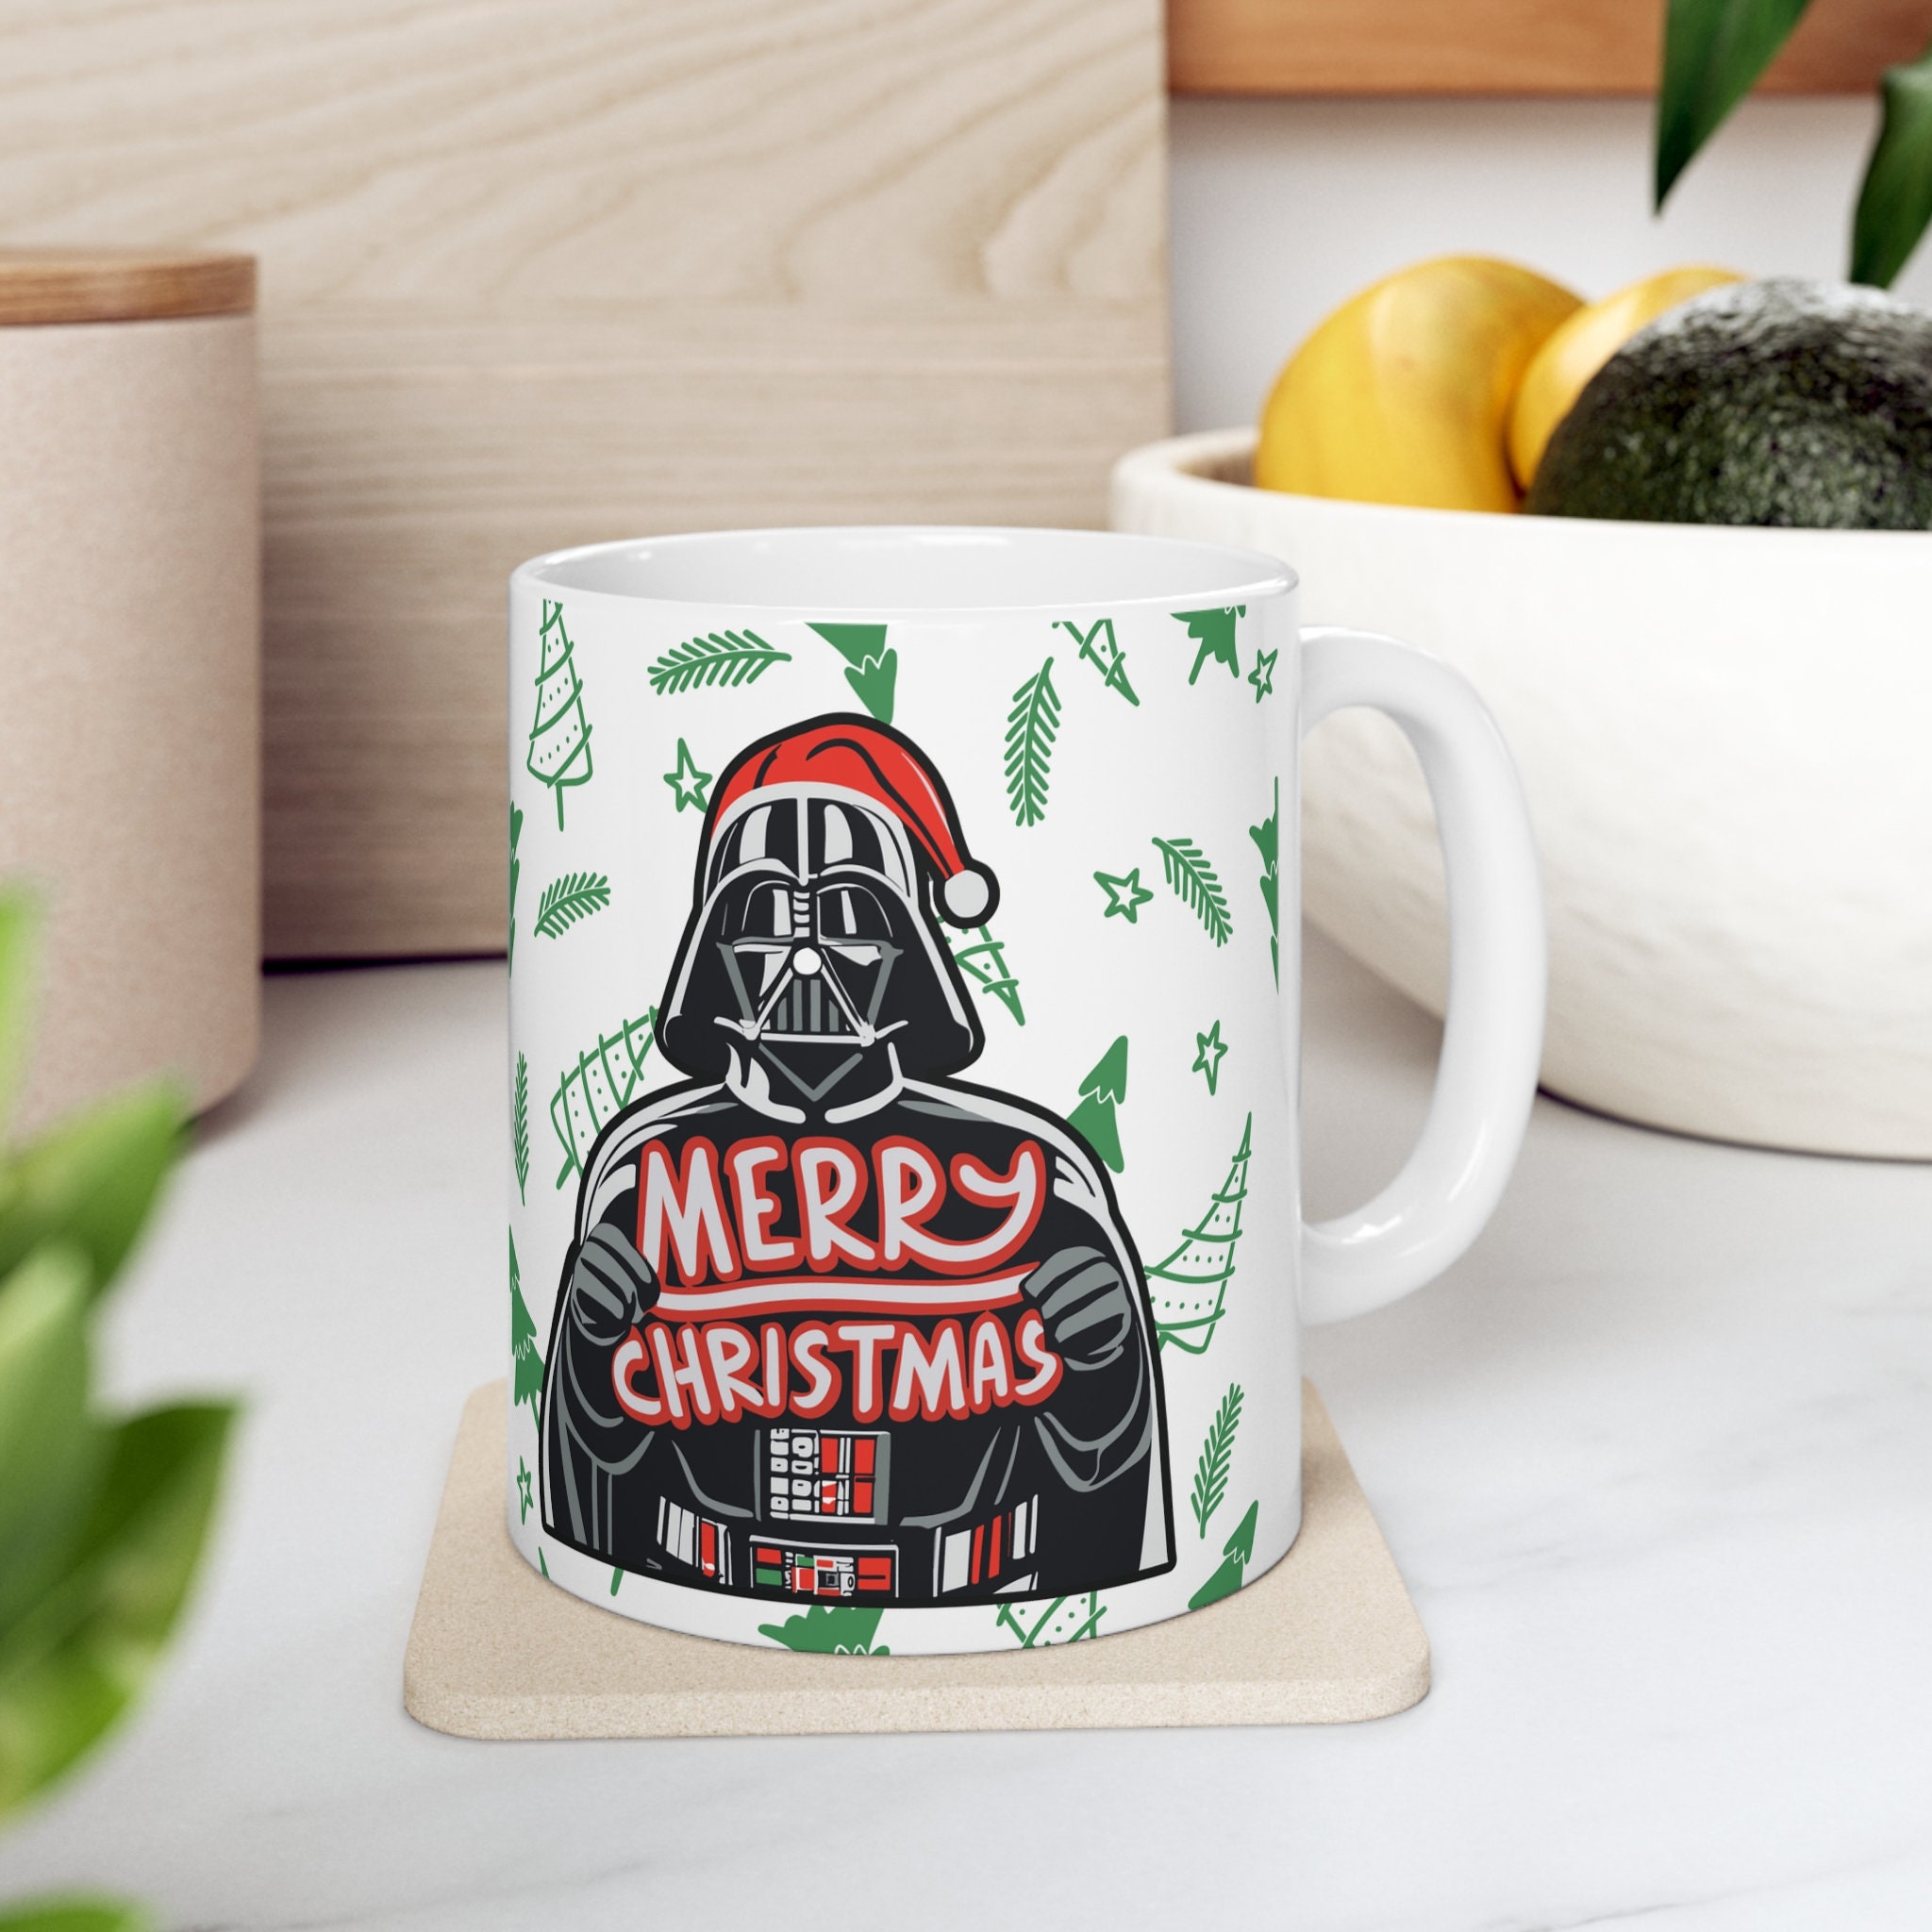 Star Wars Darth Vader Merry Sithmas 20oz Coffee Mug Christmas